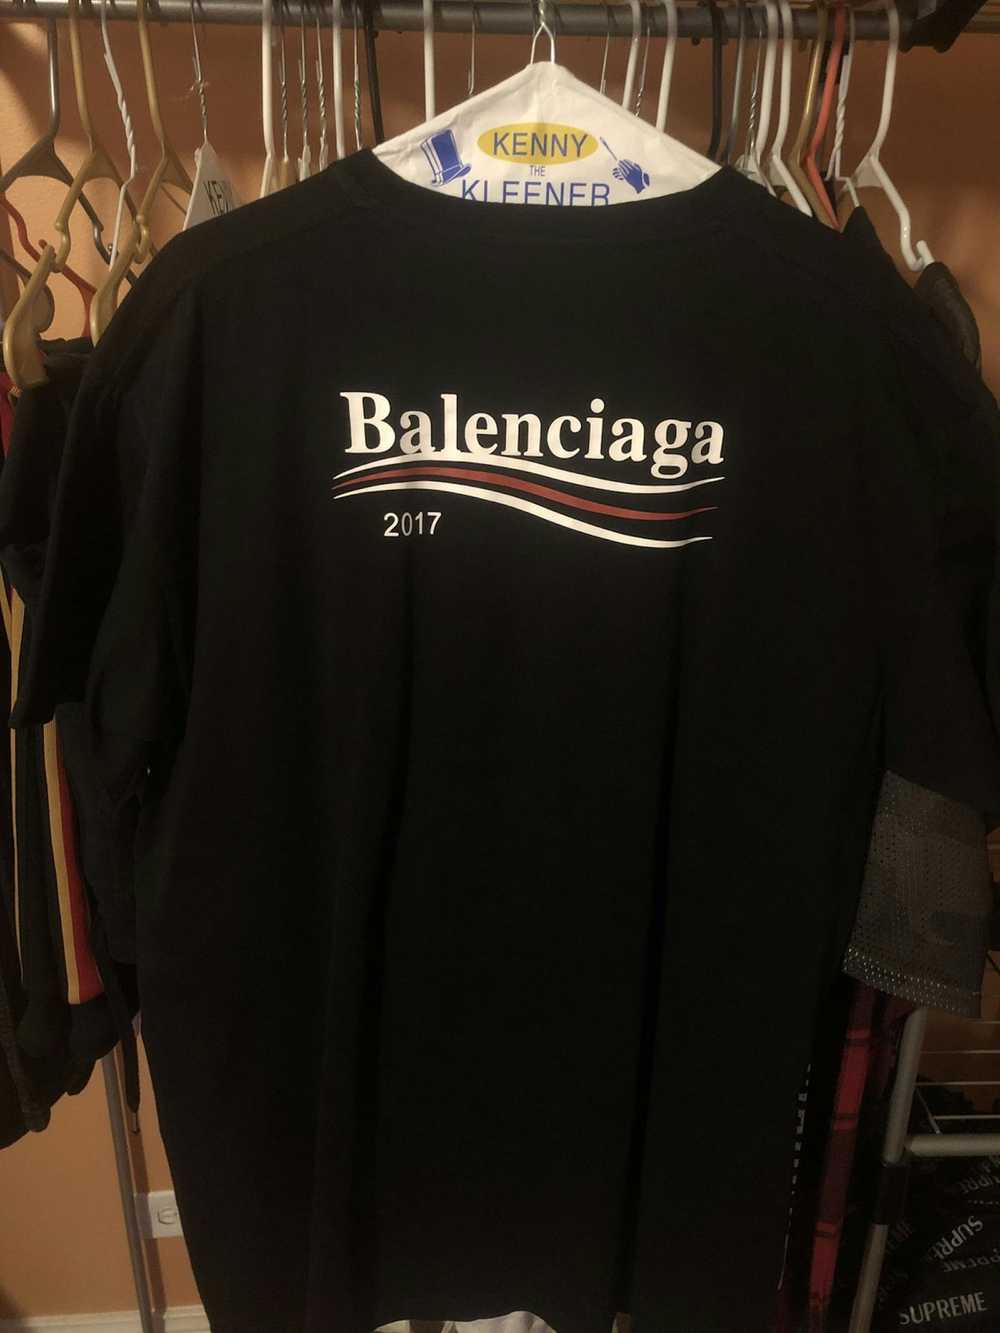 Balenciaga Balenciaga Campaign Tee 2017 - image 2